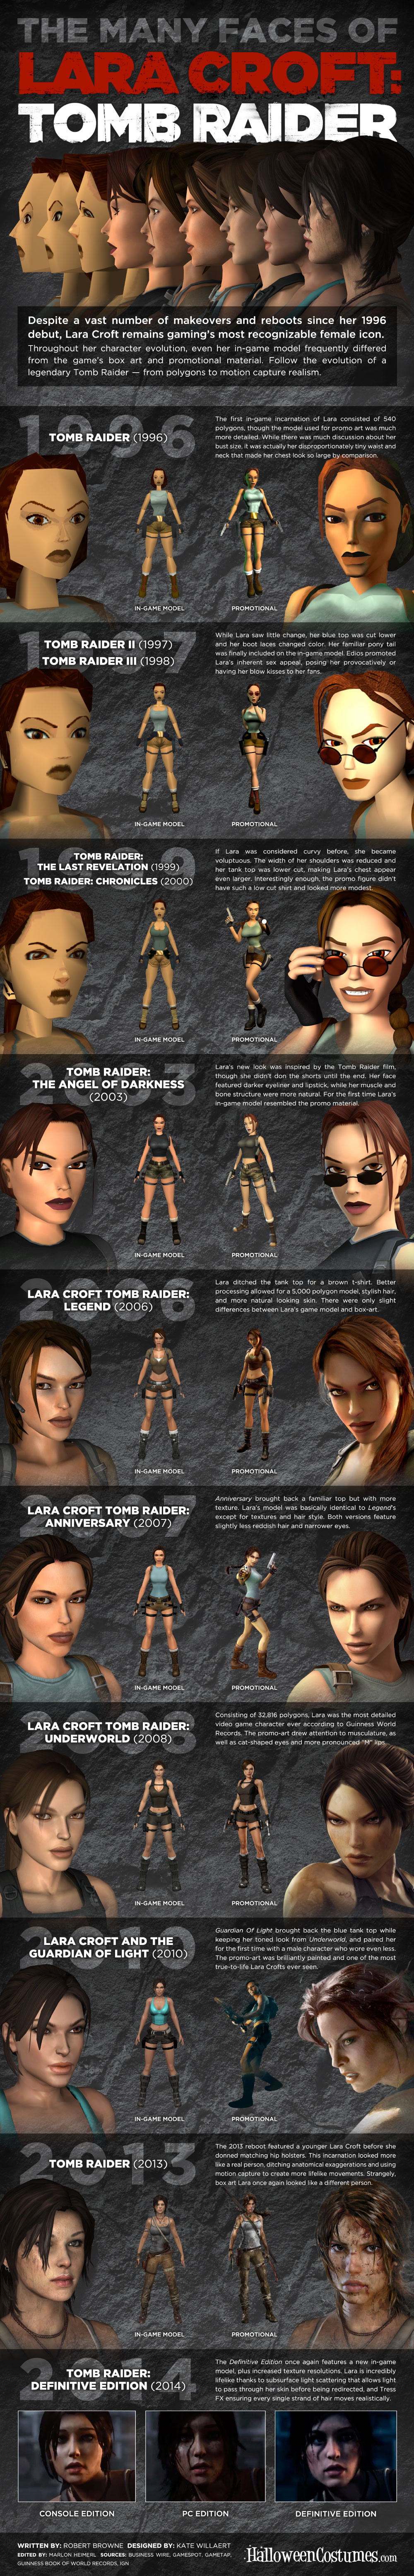 Lara Croft through years